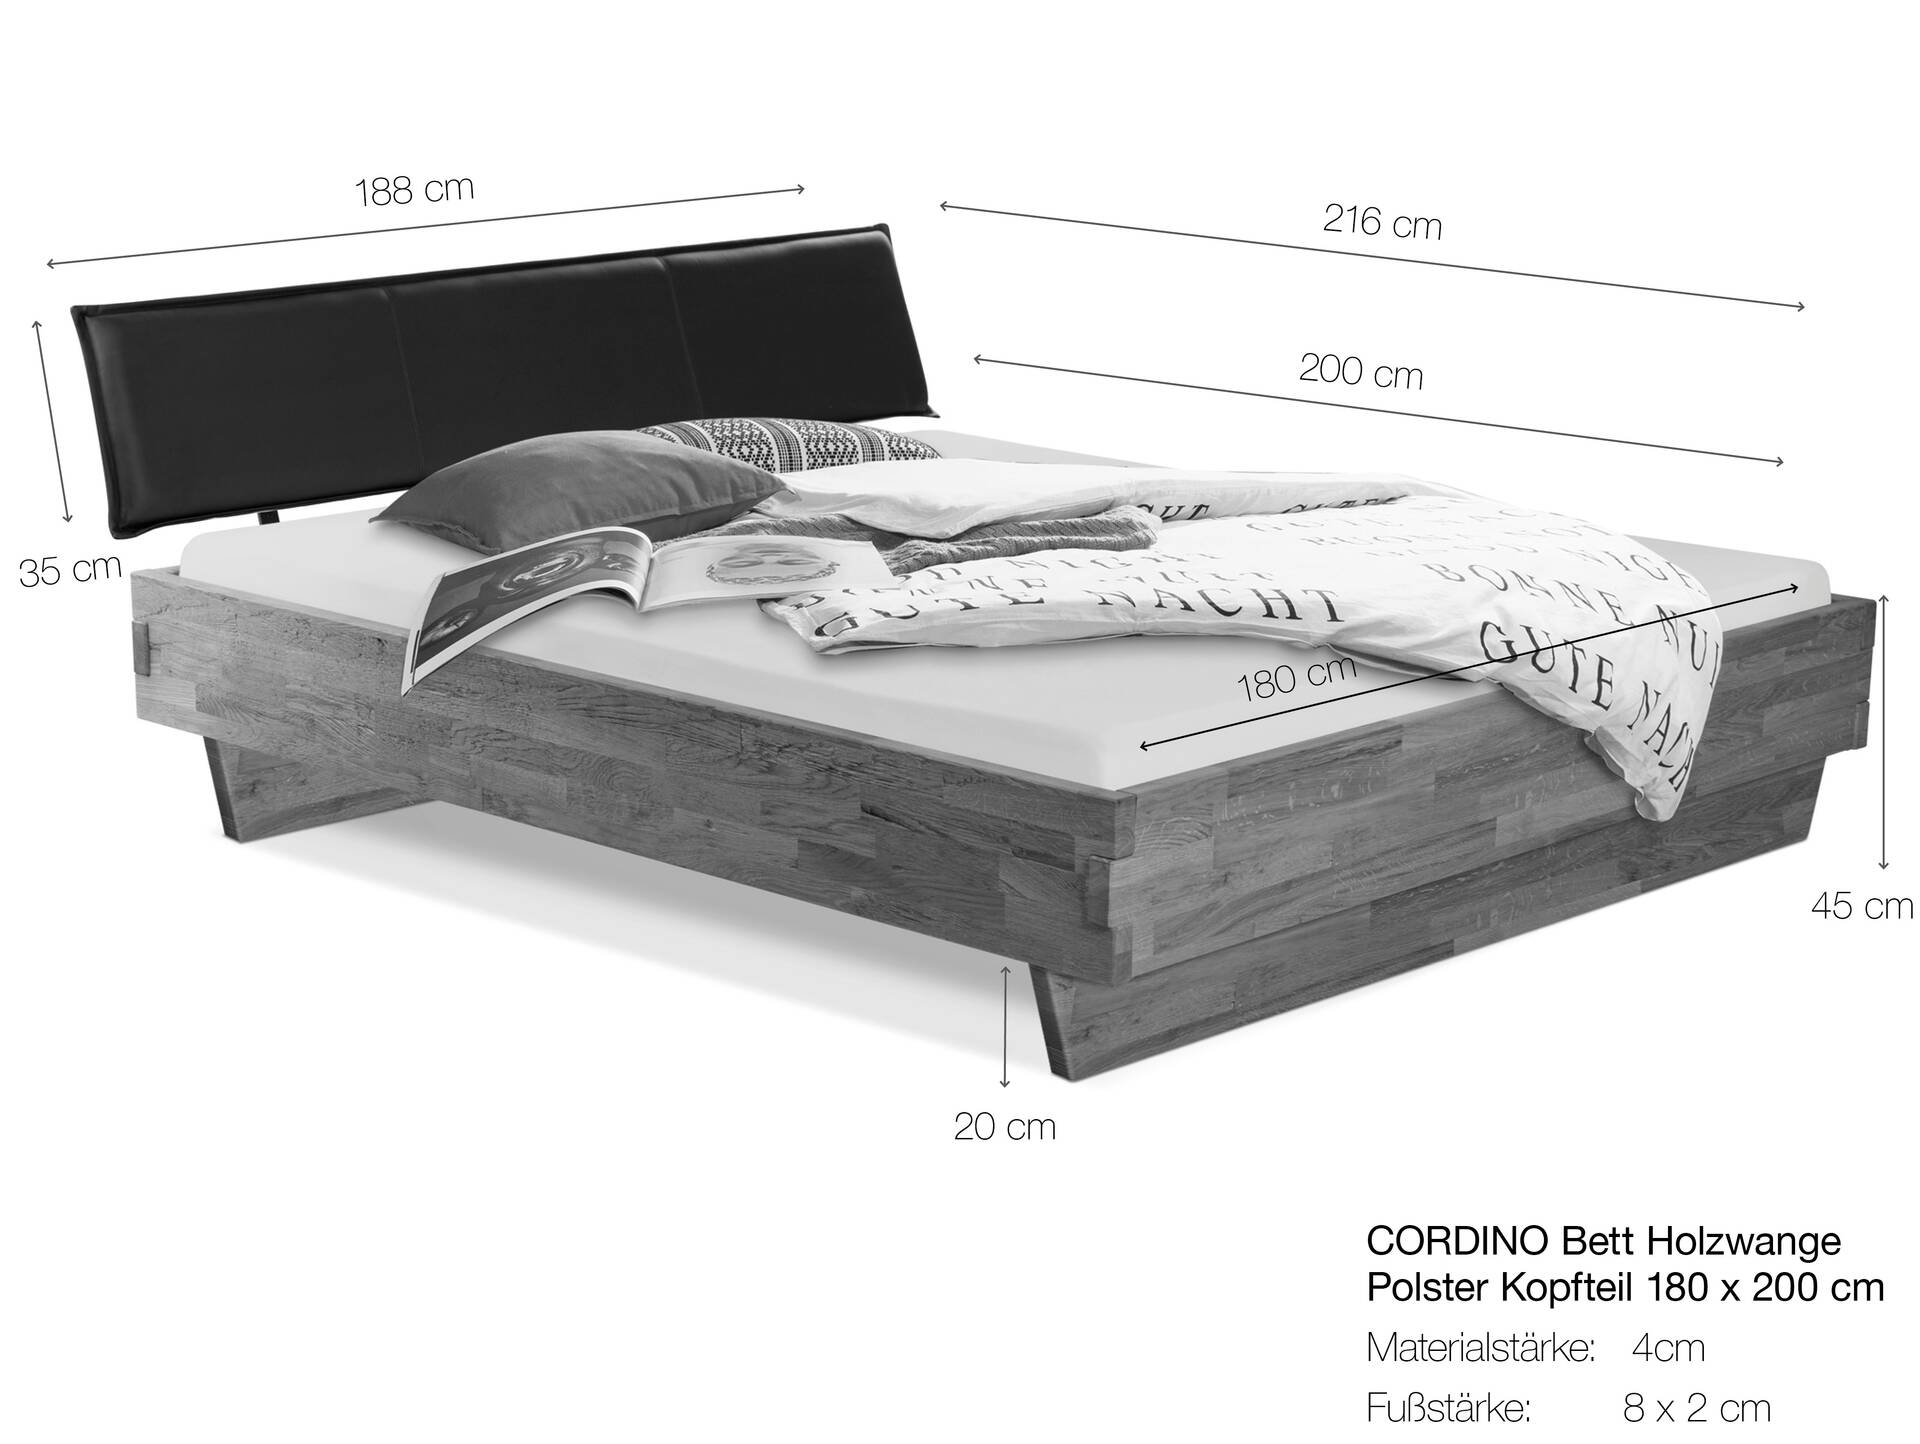 CORDINO Wangenbett aus Eiche mit Polster-Kopfteil, Material Massivholz 180 x 200 cm | Eiche lackiert | Kunstleder Braun | gehackt